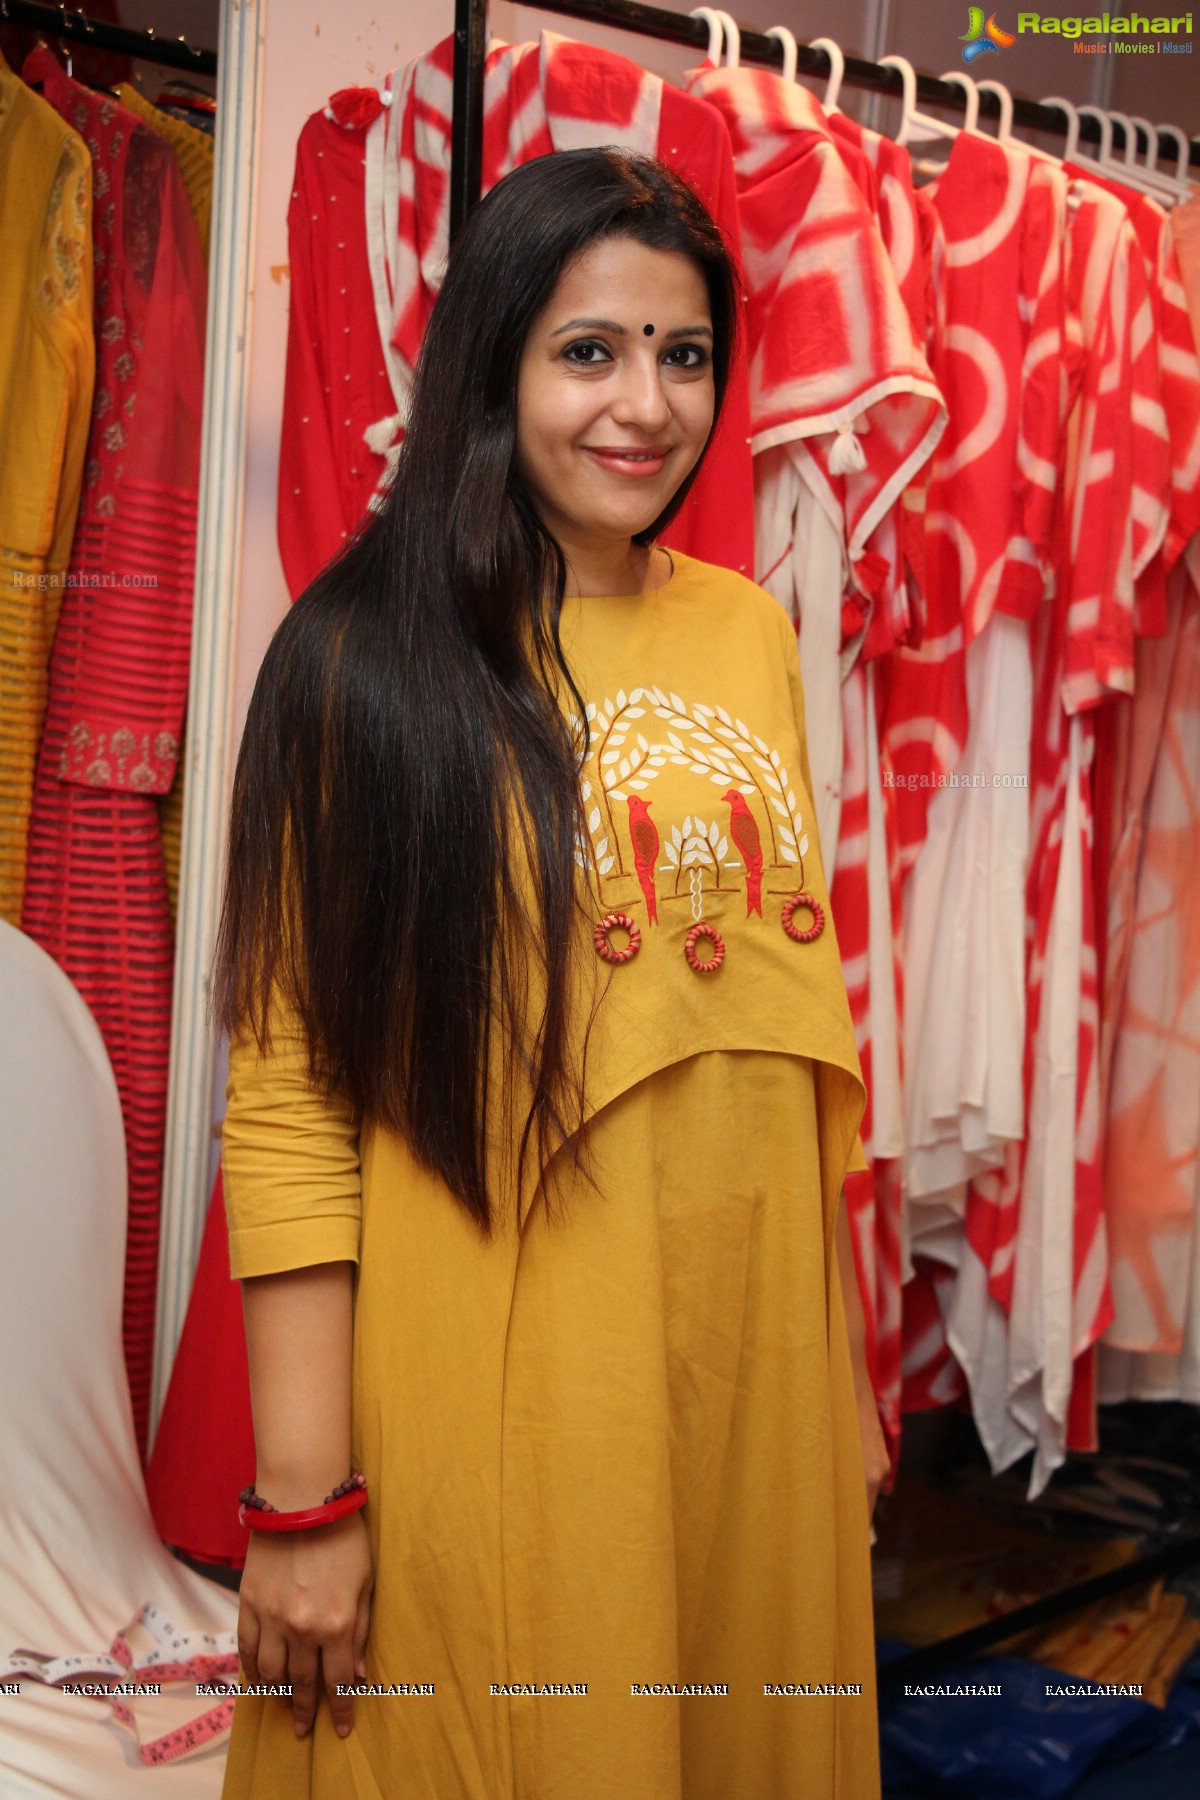 Fashion Yatra 2016 at Taj Krishna, Hyderabad